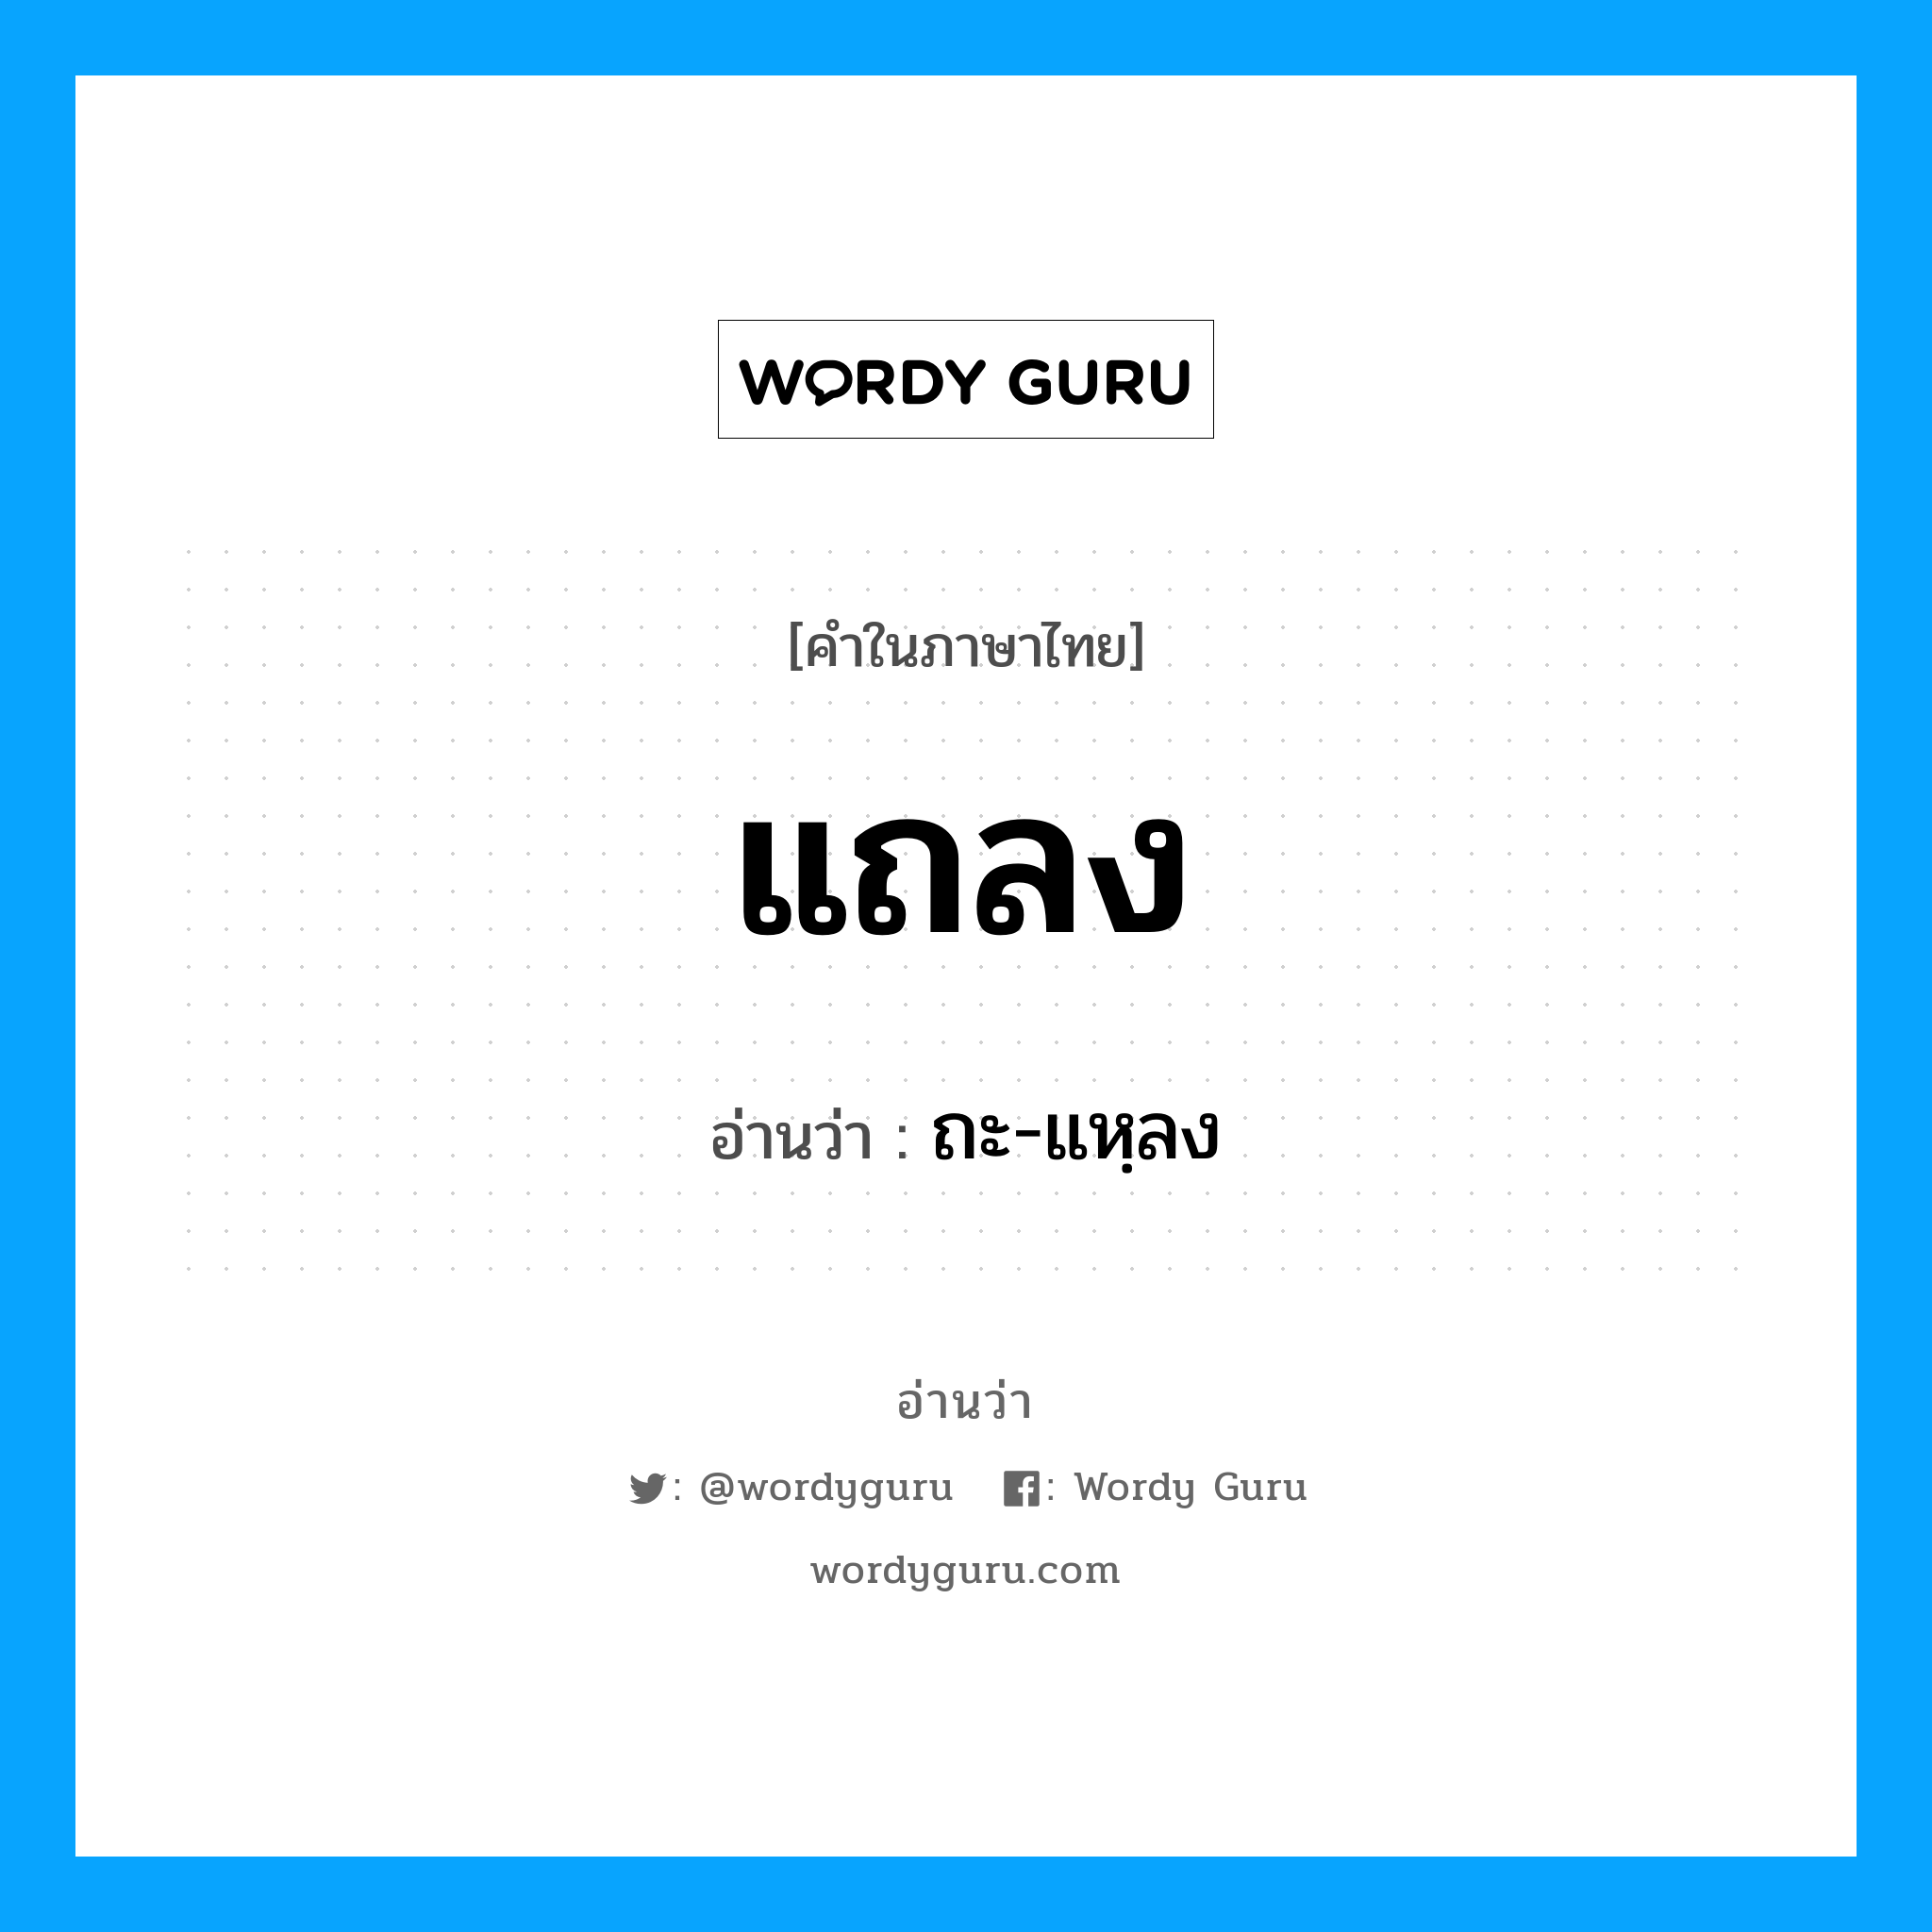 ถะ-แหฺลง เป็นคำอ่านของคำไหน?, คำในภาษาไทย ถะ-แหฺลง อ่านว่า แถลง